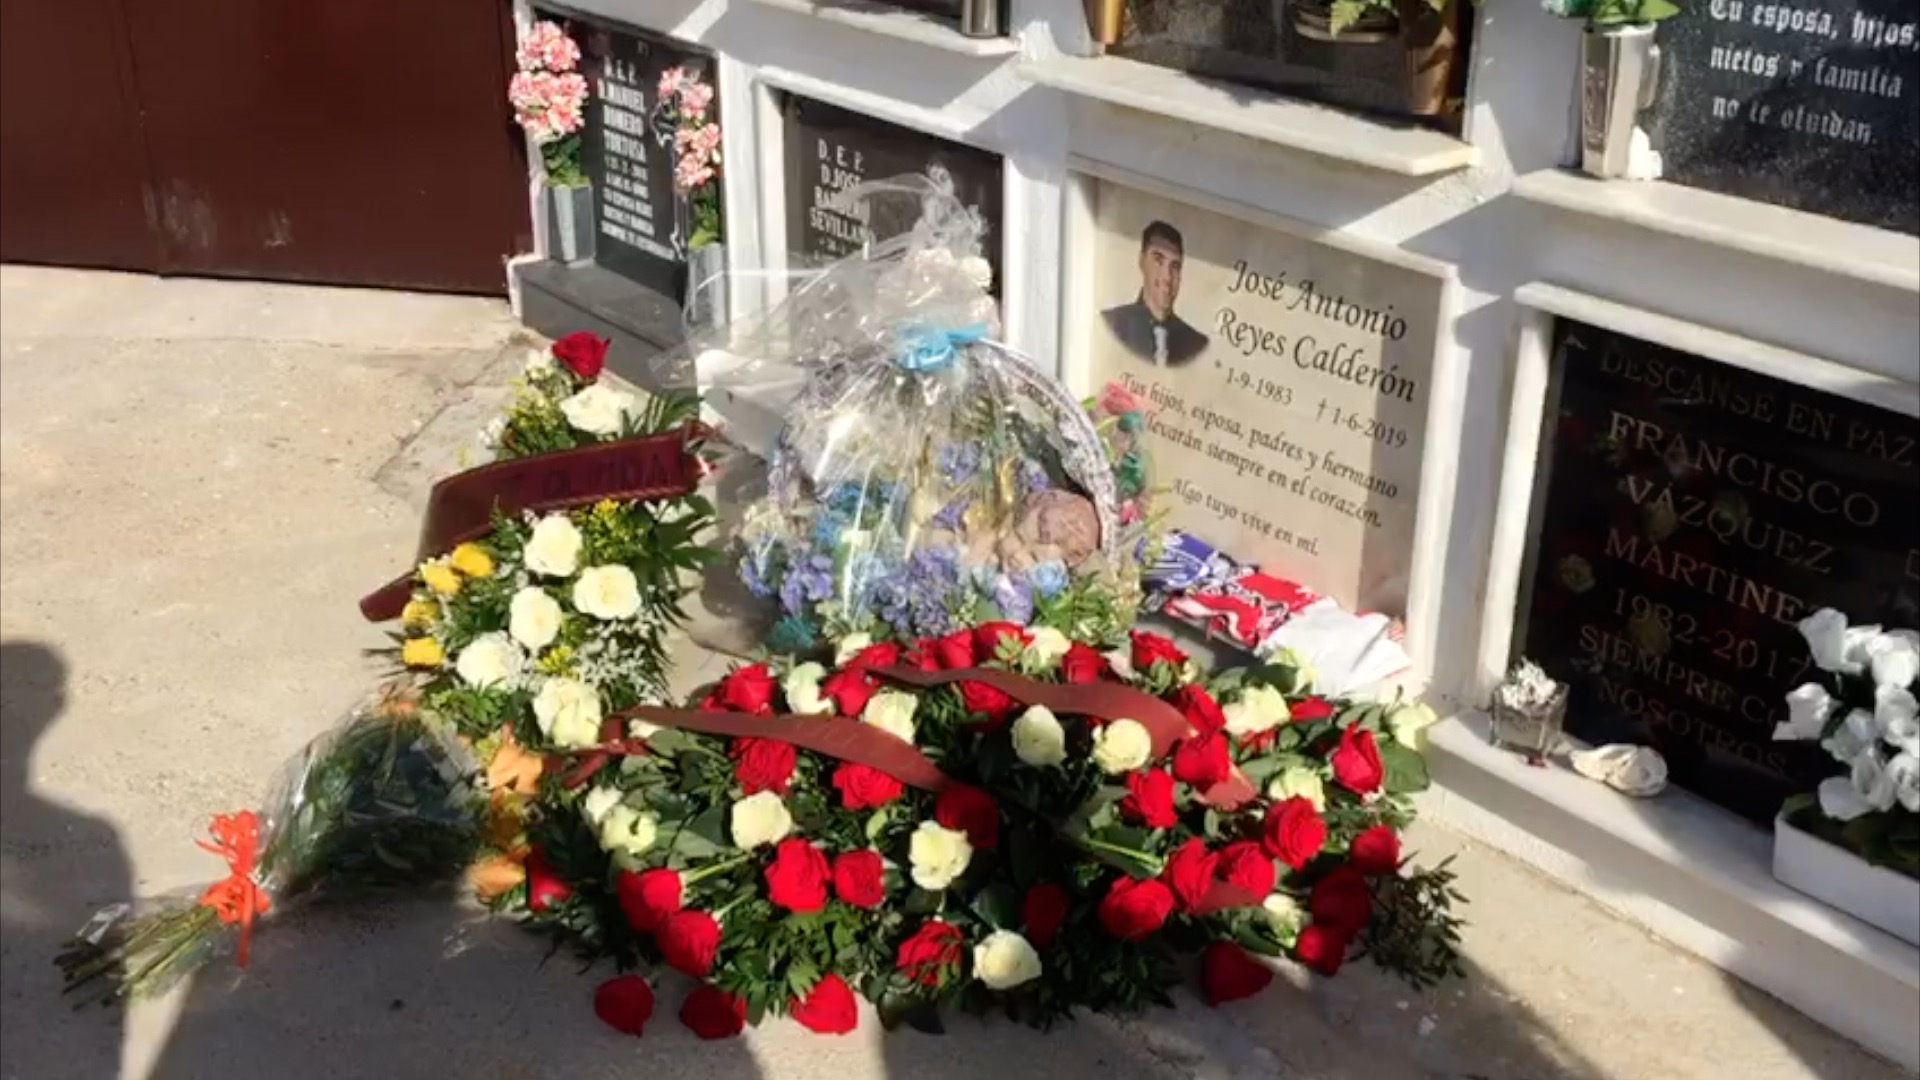 Floral offering in memory of José Antonio Reyes